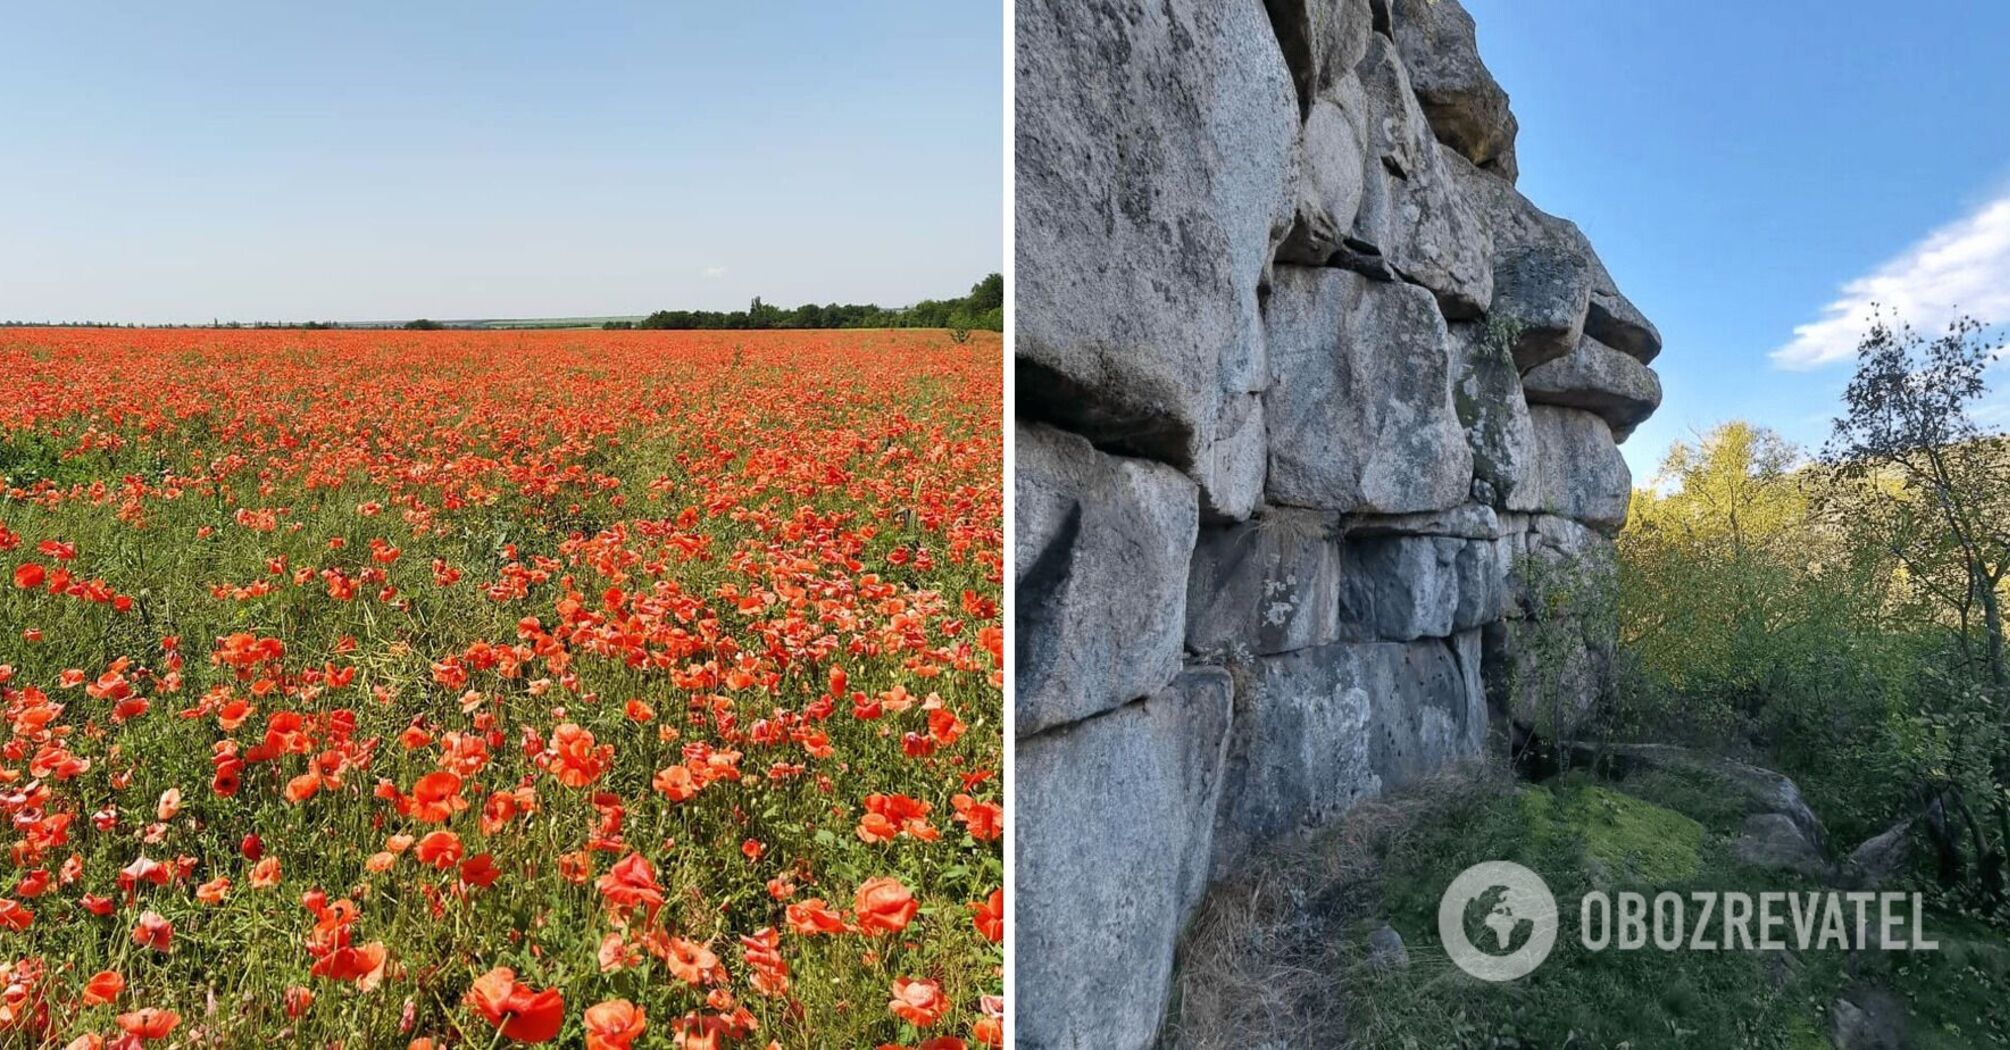 Ukrainian Stonehenge: Monastyryshche Nature Reserve in Kropyvnytskyi region